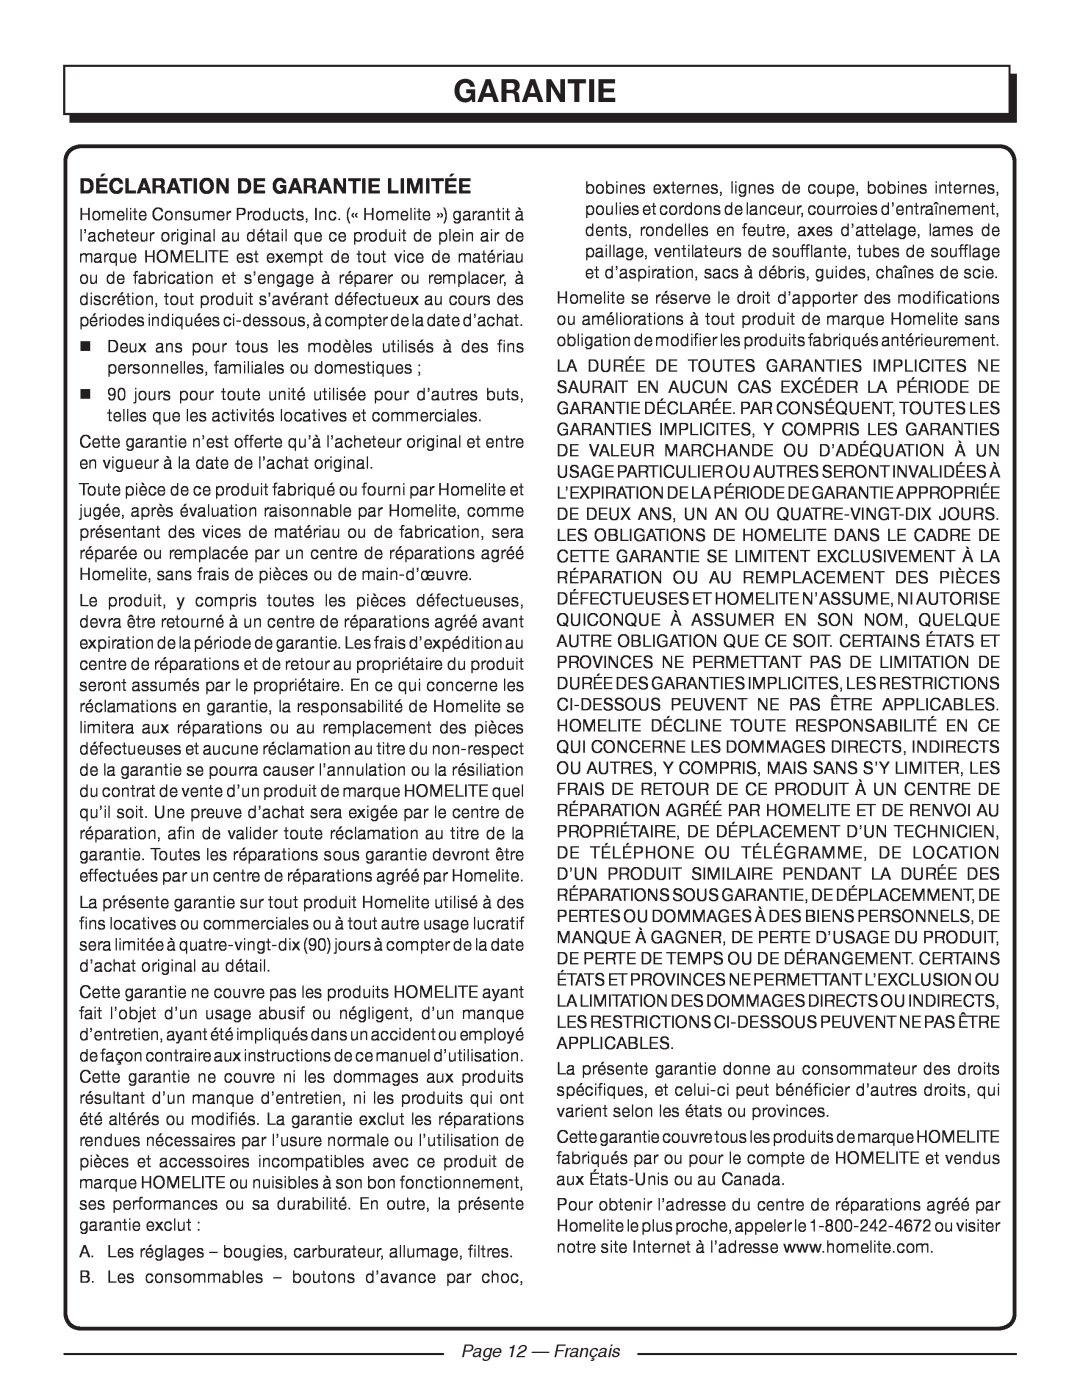 Homelite UT09520 manuel dutilisation Déclaration De Garantie Limitée, Page 12 - Français 